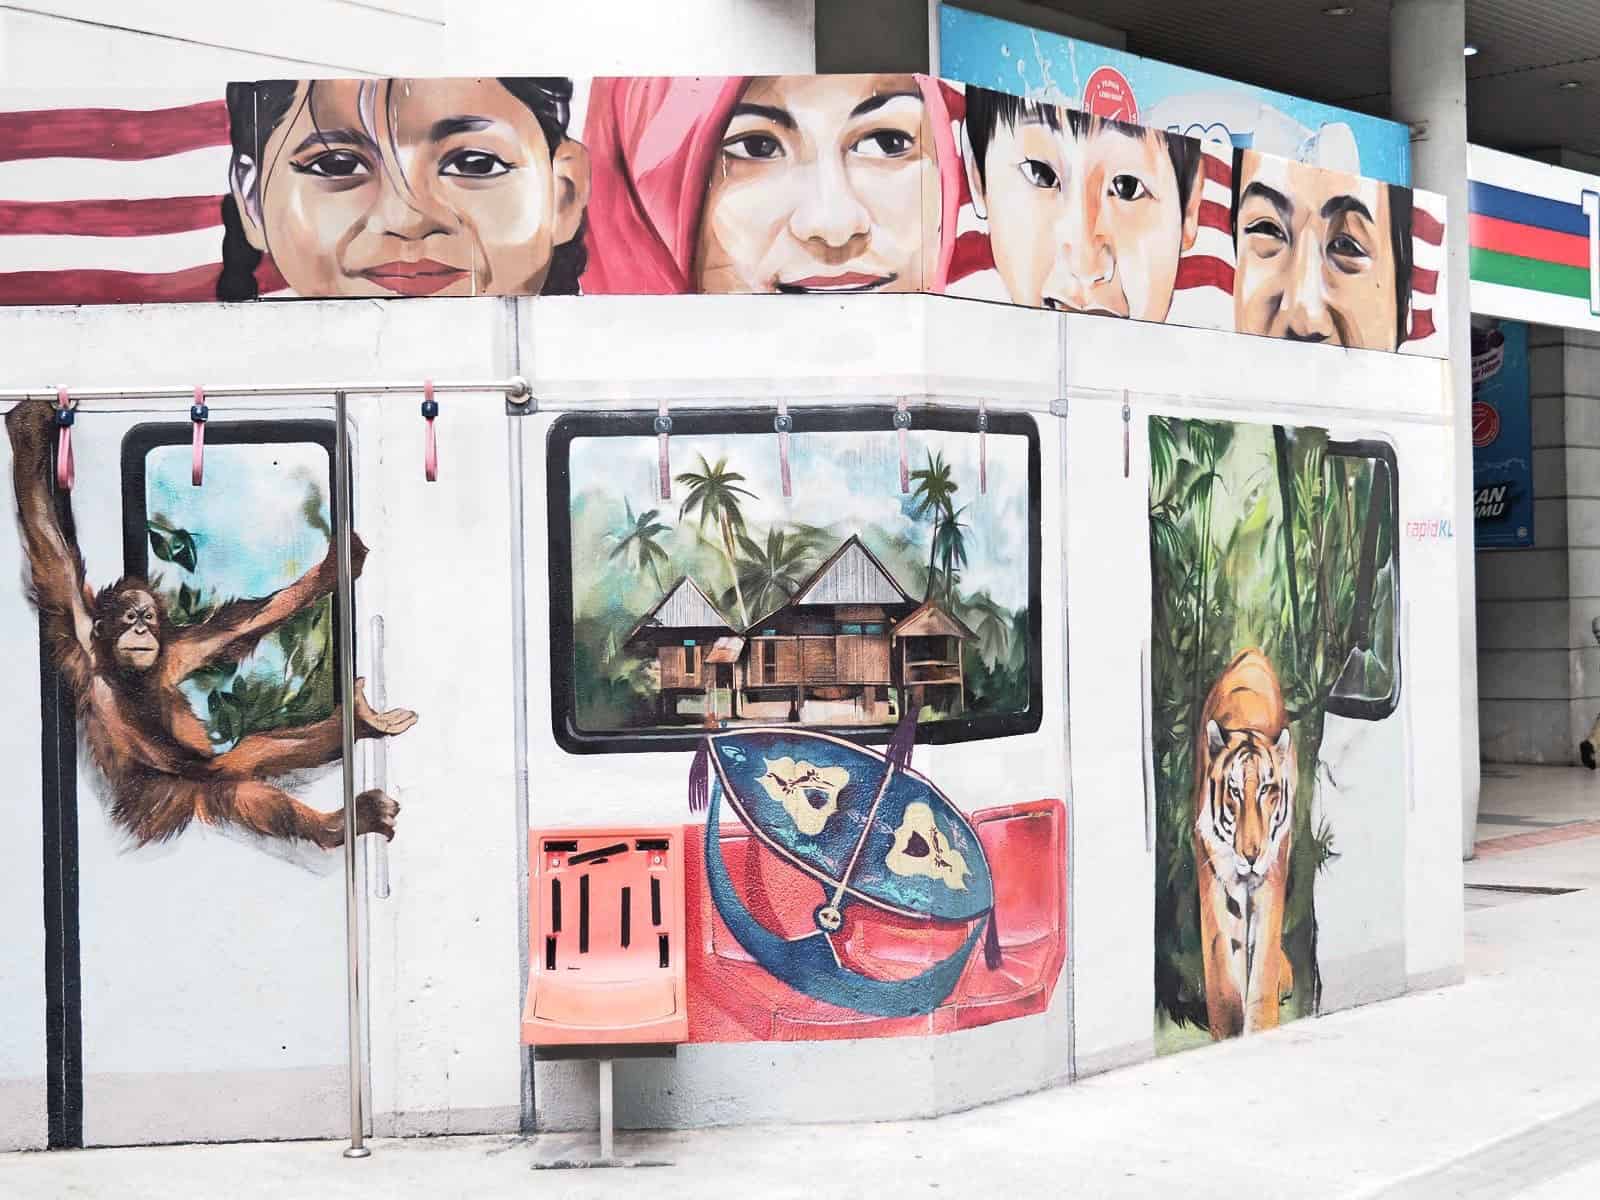 KLCC-Mural-Kuala-Lumpur-Malaysia ] Travel Mermaid